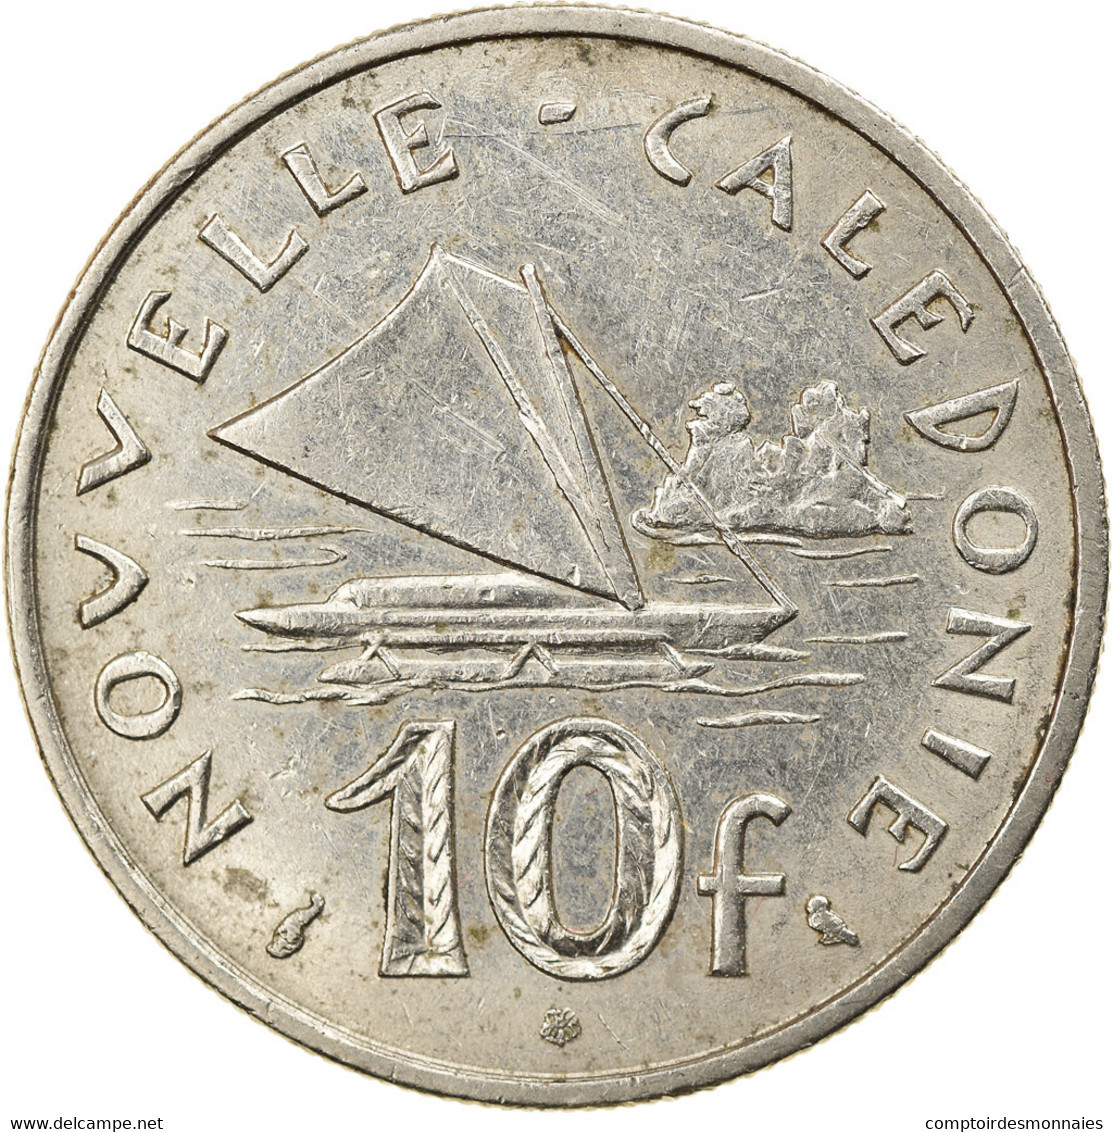 Monnaie, Nouvelle-Calédonie, 10 Francs, 1972, Paris, TTB, Nickel, KM:11 - Nouvelle-Calédonie